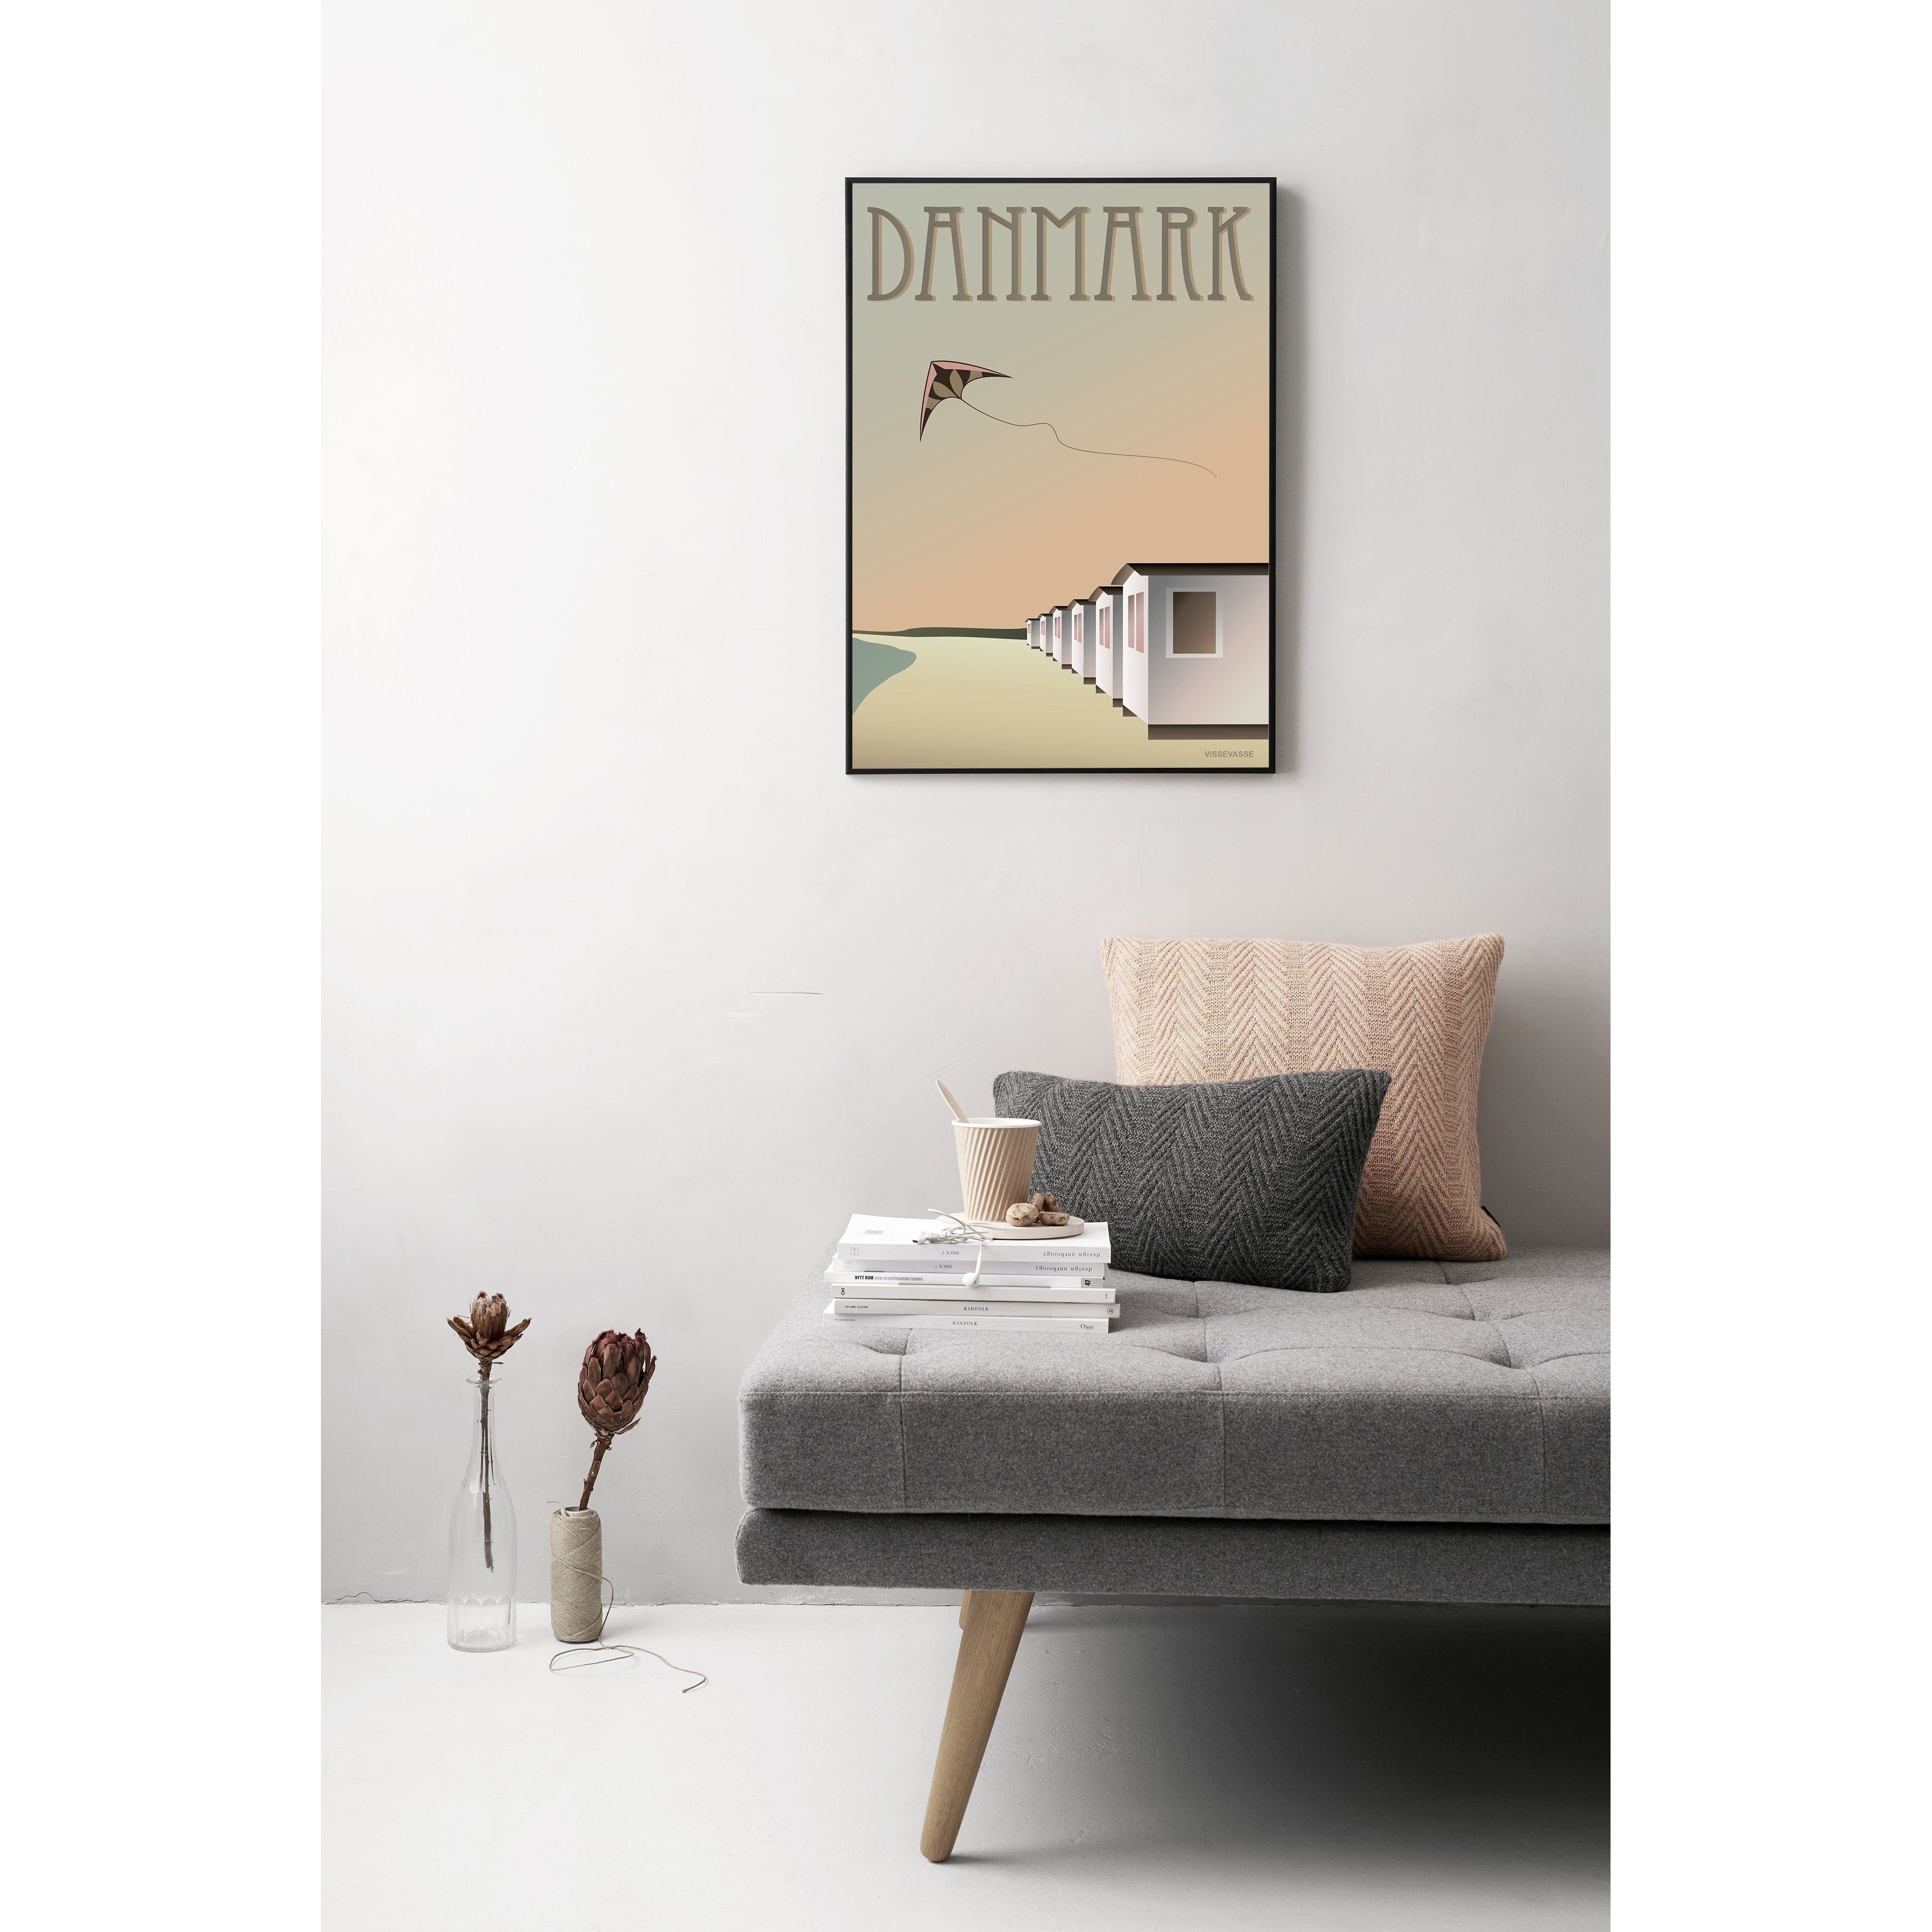 Vissevasse Denmark Beach Houses Poster, 15 X21 Cm